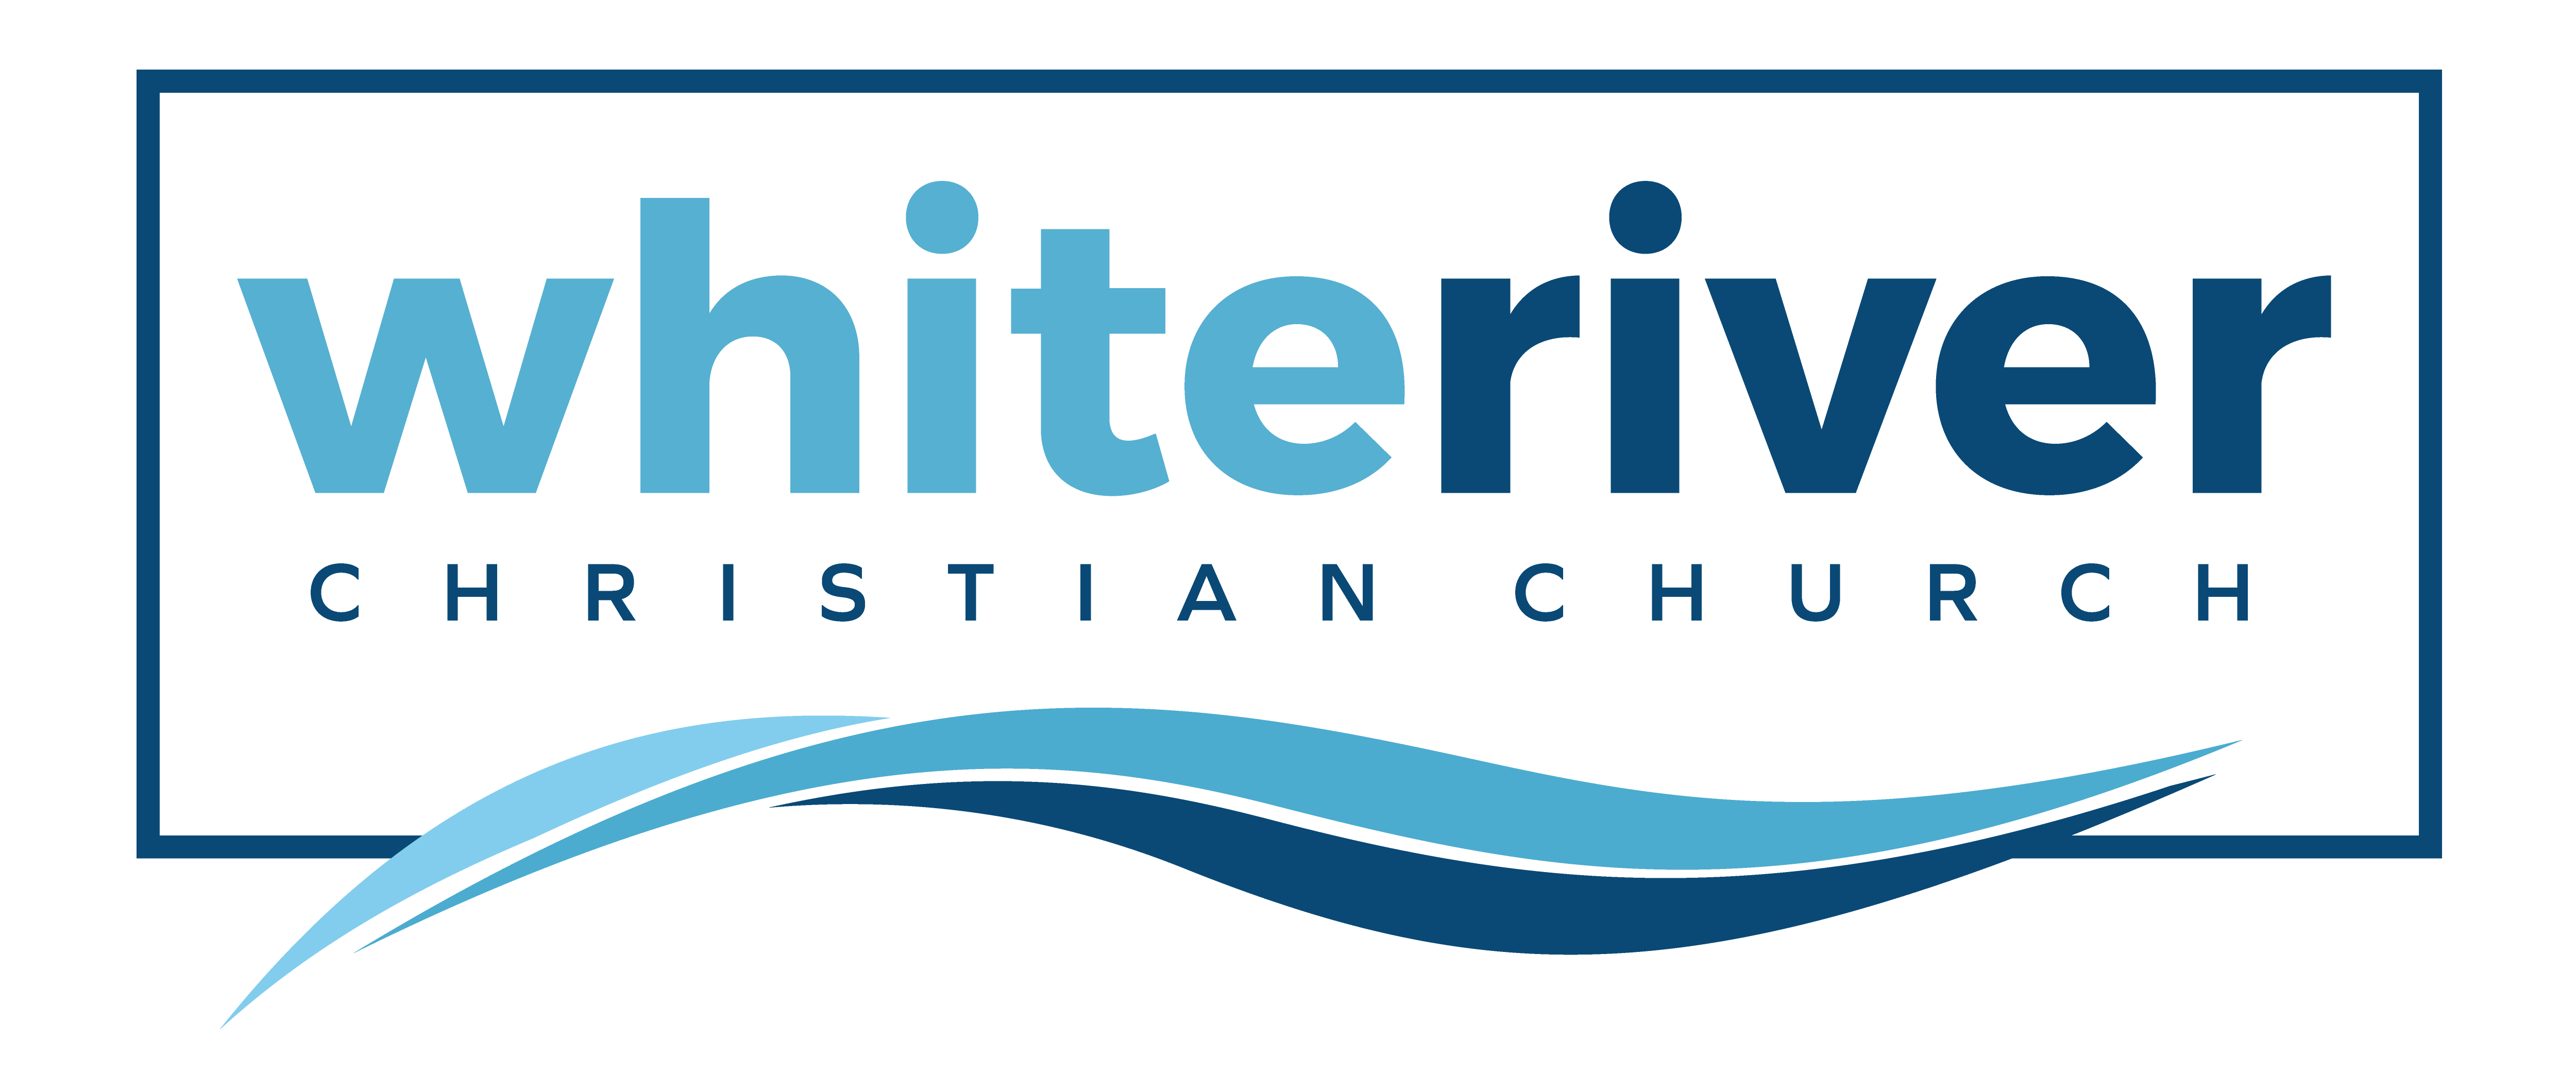 White Church Logo - White River Christian Church